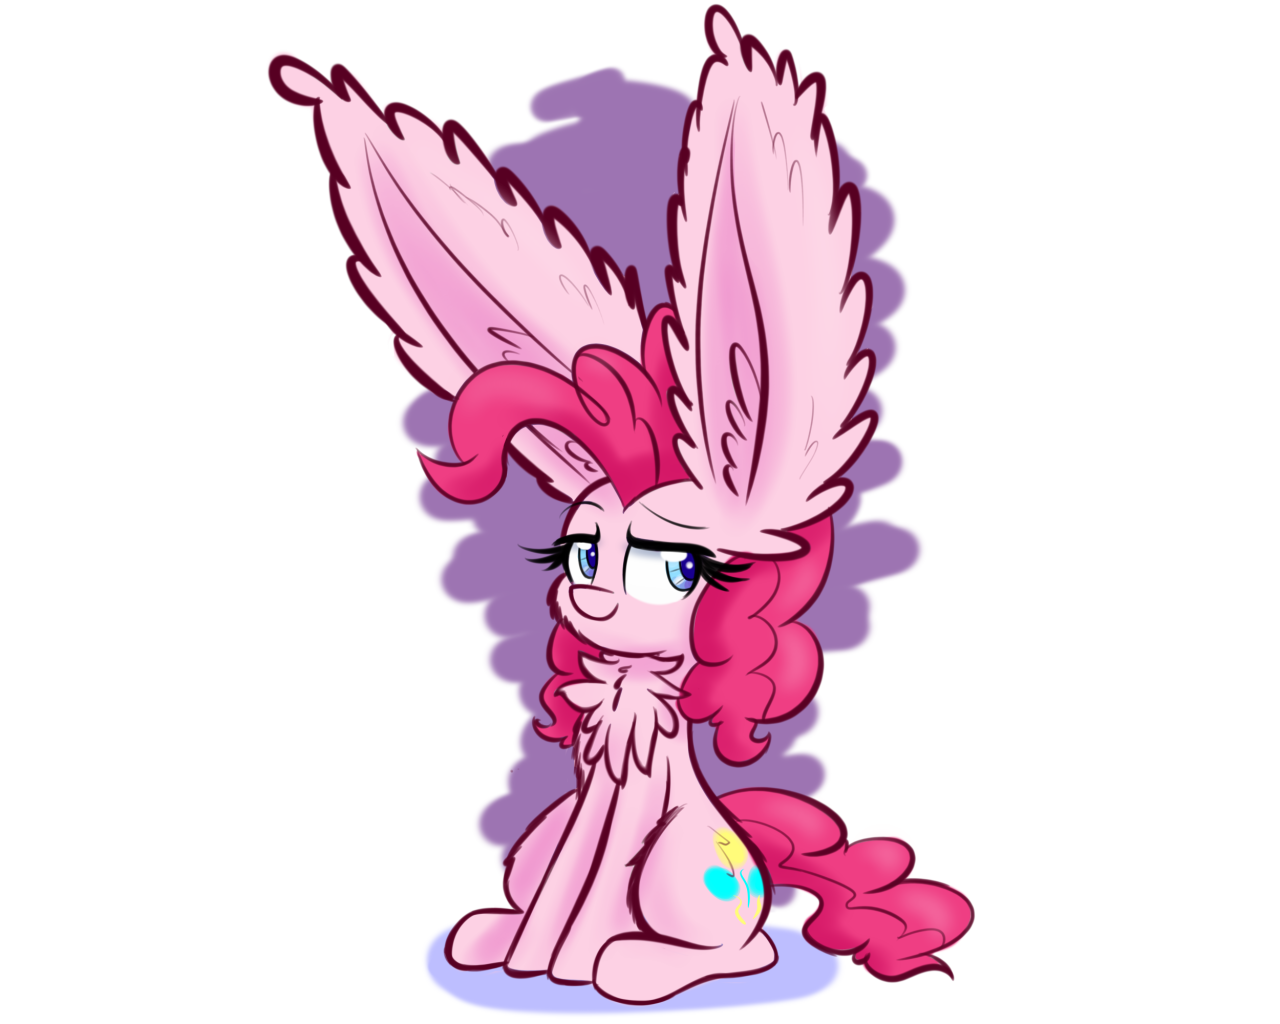 Pie with Big Ears - My little pony, Pinkie pie, Fluffy